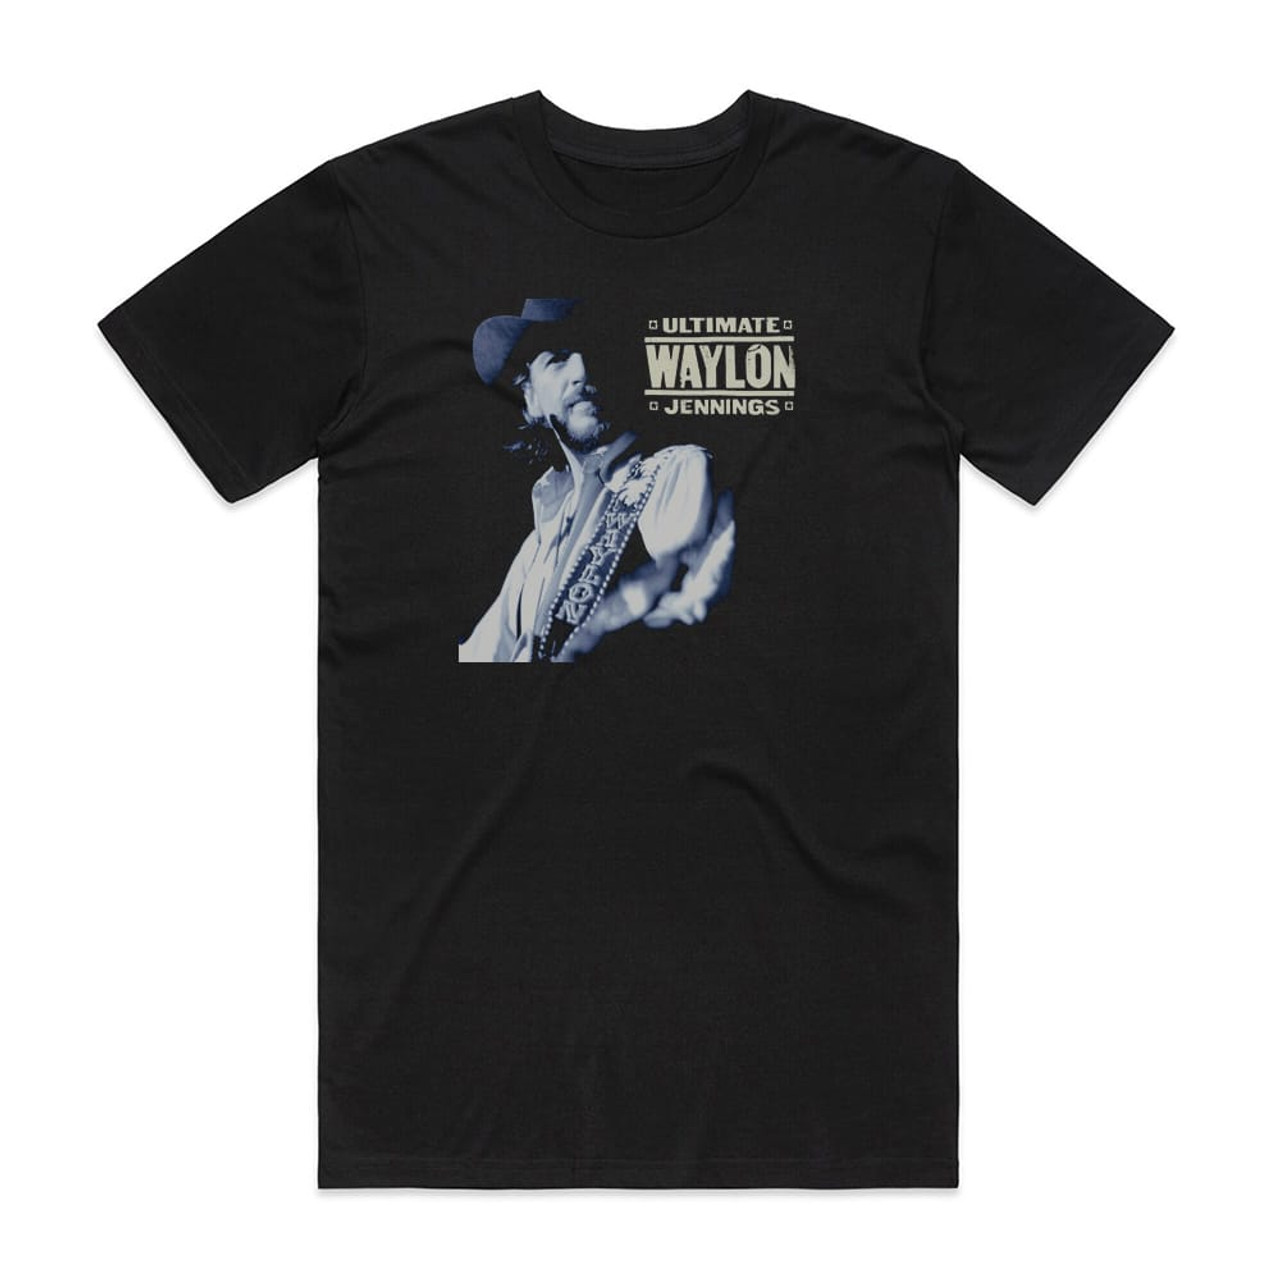 Waylon Jennings Ultimate Waylon Jennings Album Cover T-Shirt Black